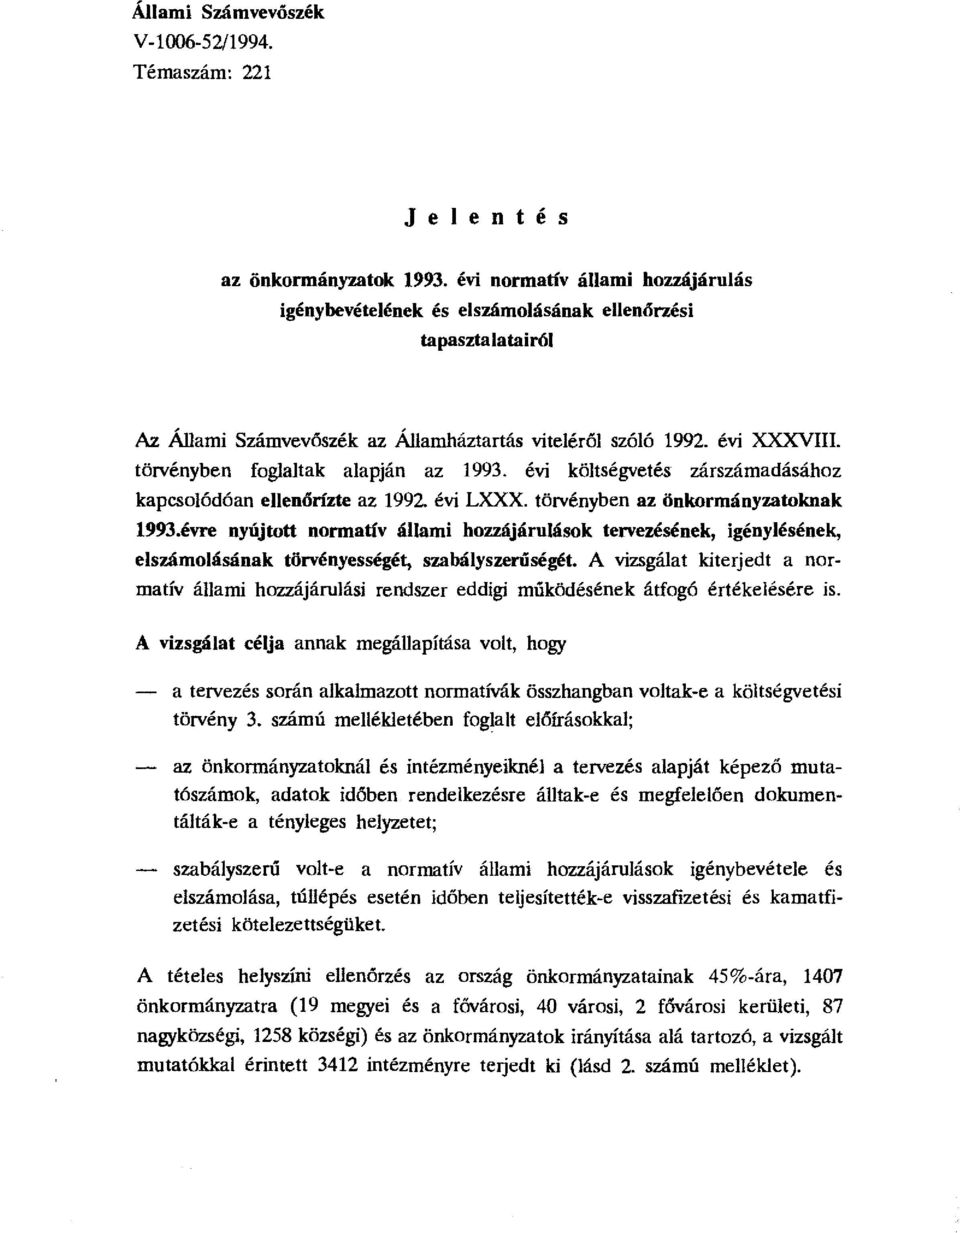 törvényben fglaltak alapján az 1993. évi költségvetés zárszámadásáhz kapcslódóan ellenórizte az 1992. évi LXXX. törvényben az önkrmányzatknak 1993.